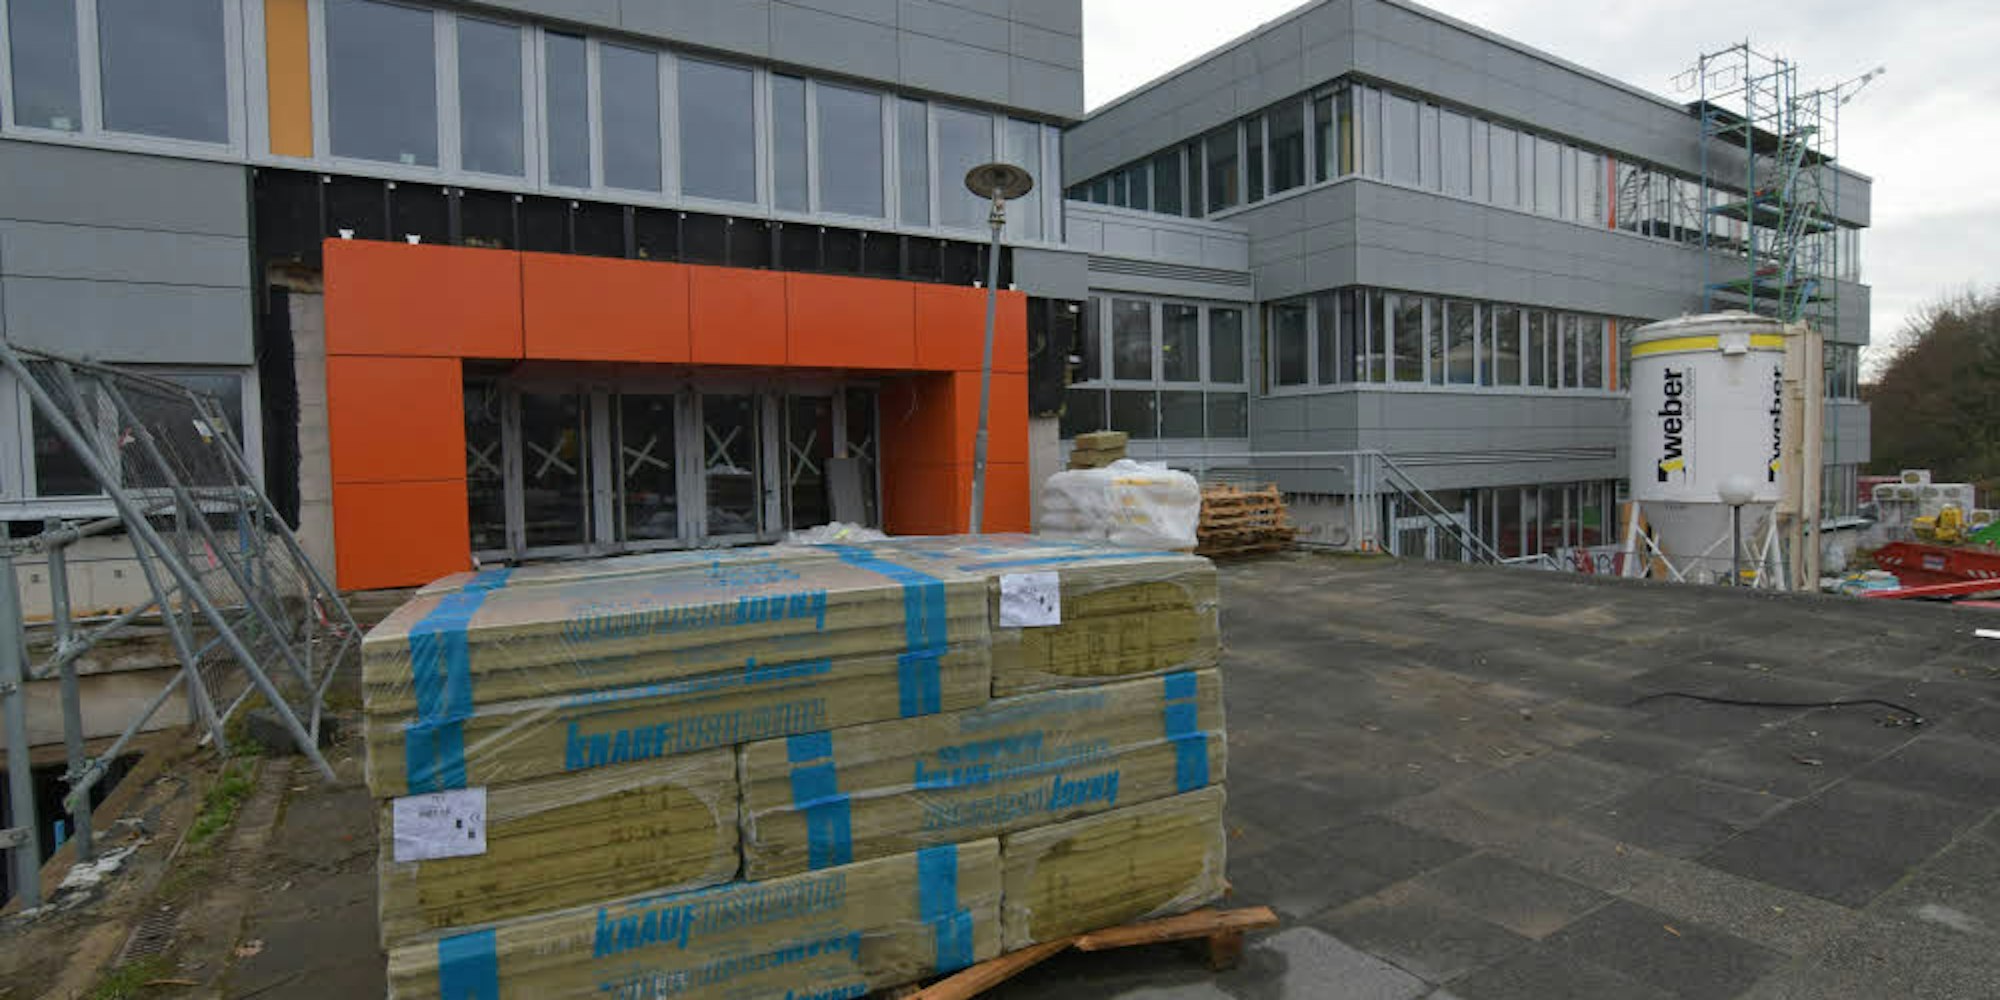 Bauarbeiten am Otto-Hahn-Gymnasium stagnieren im Dezember 2018. Die Schulen gehören zum Immobilienbetrieb der Stadt, der chronisch defizitär ist.